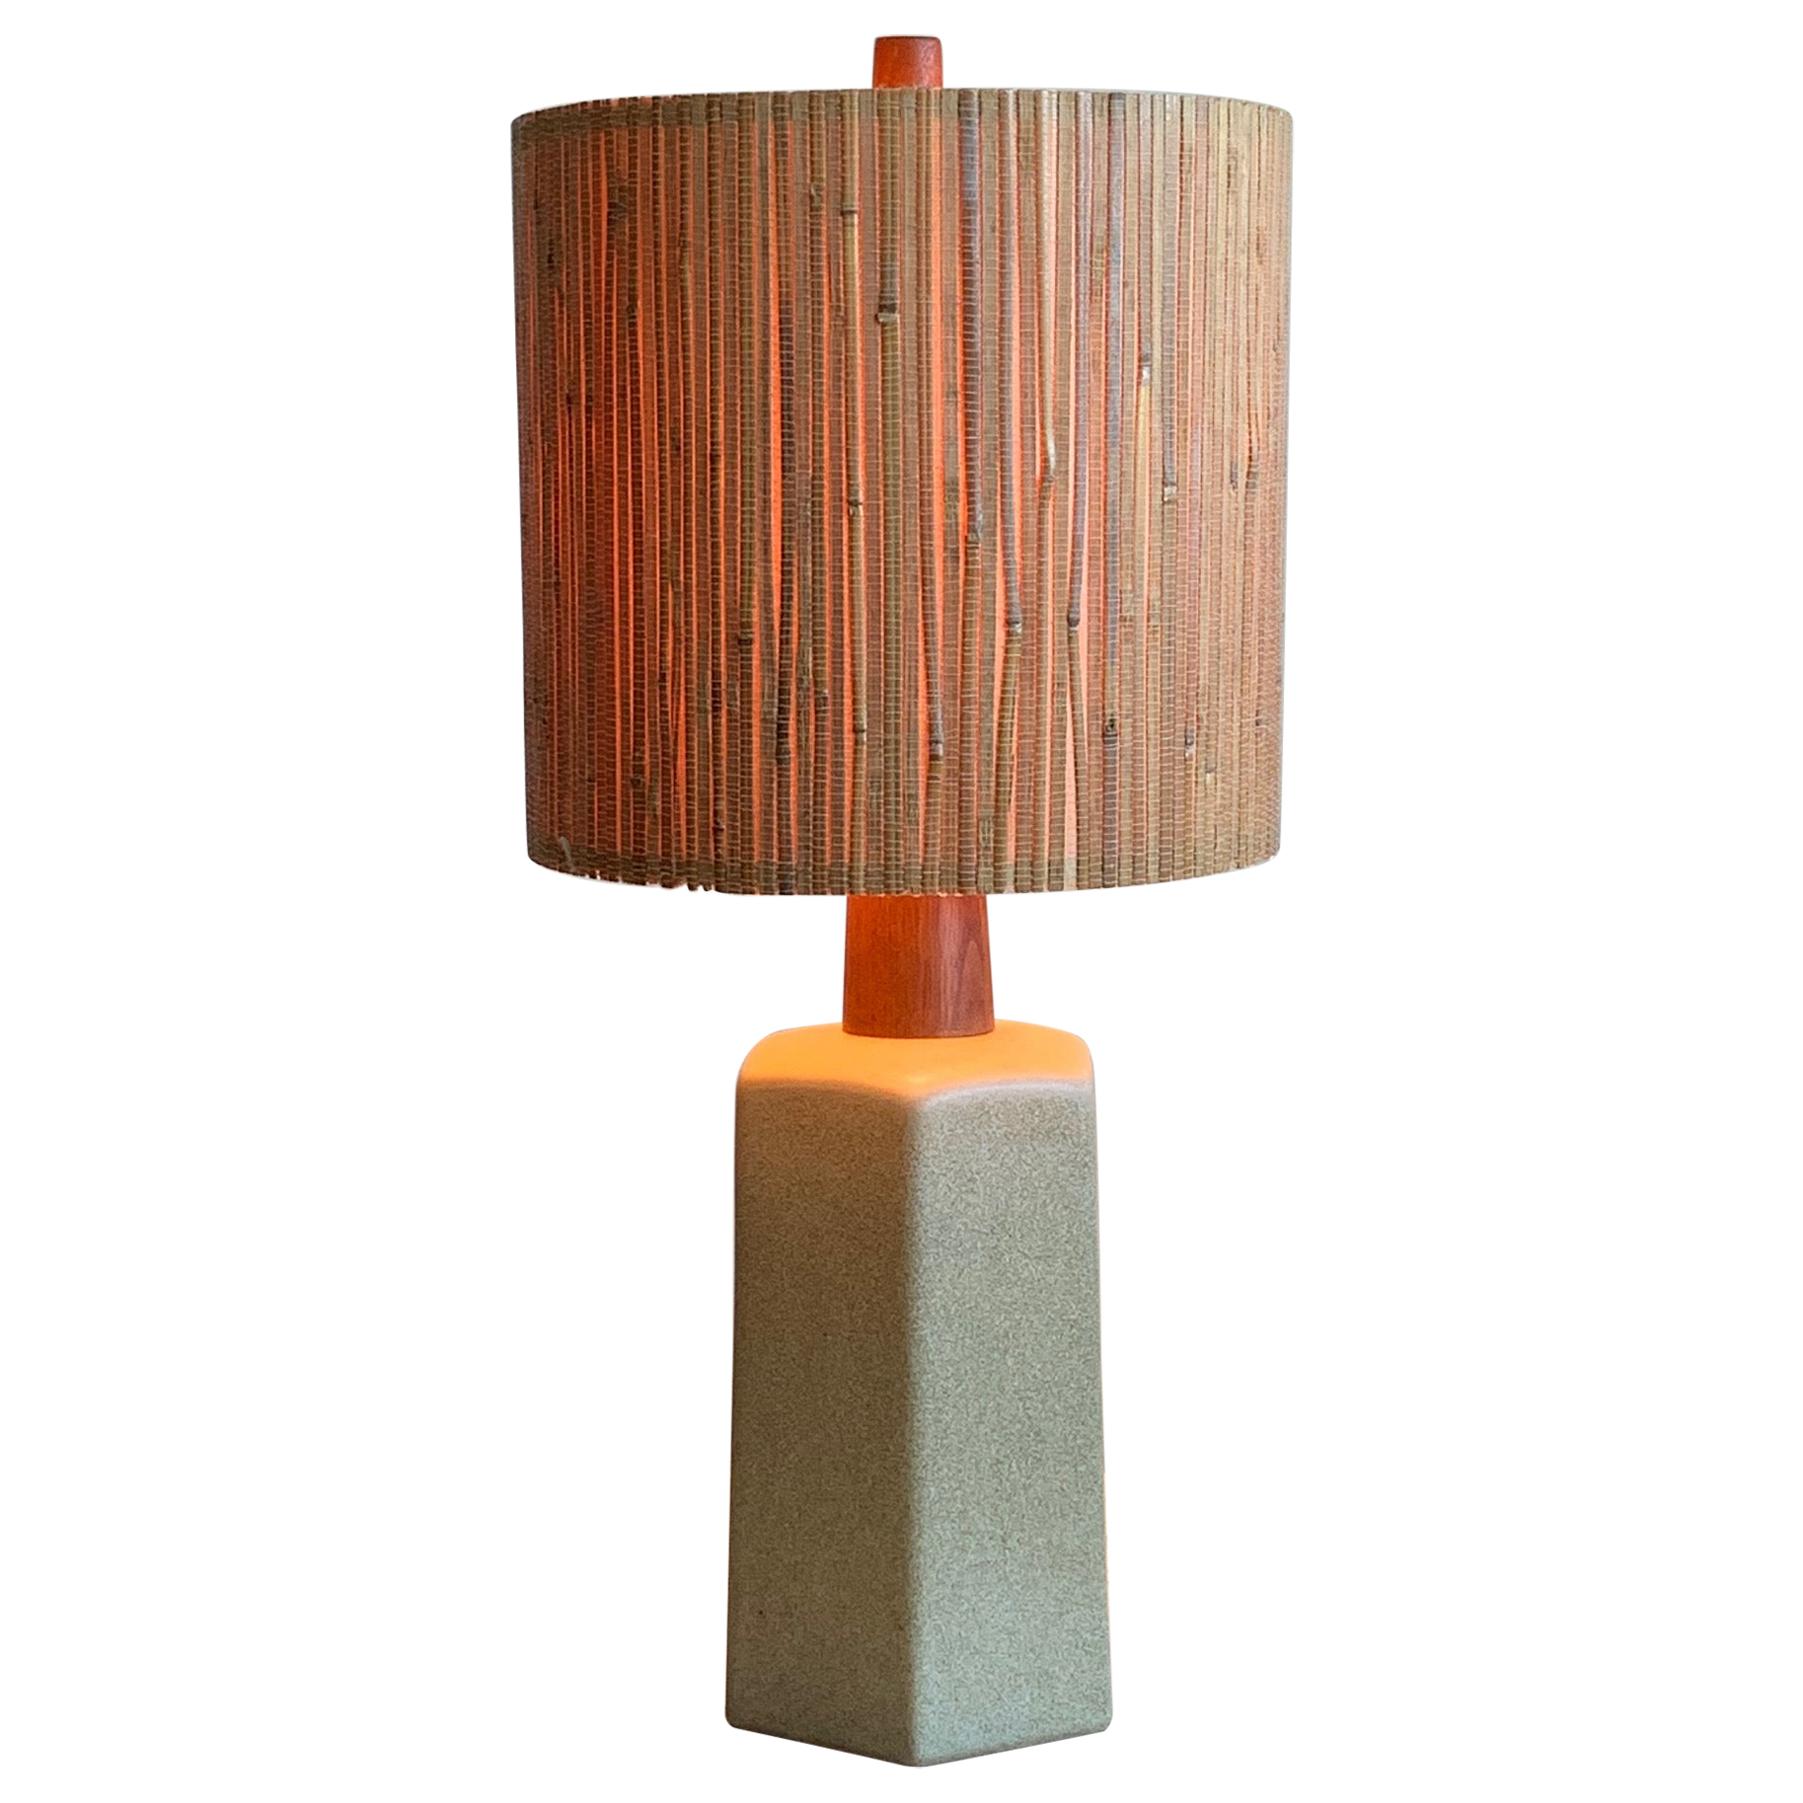 Unusual Ceramic Lamp by Martz